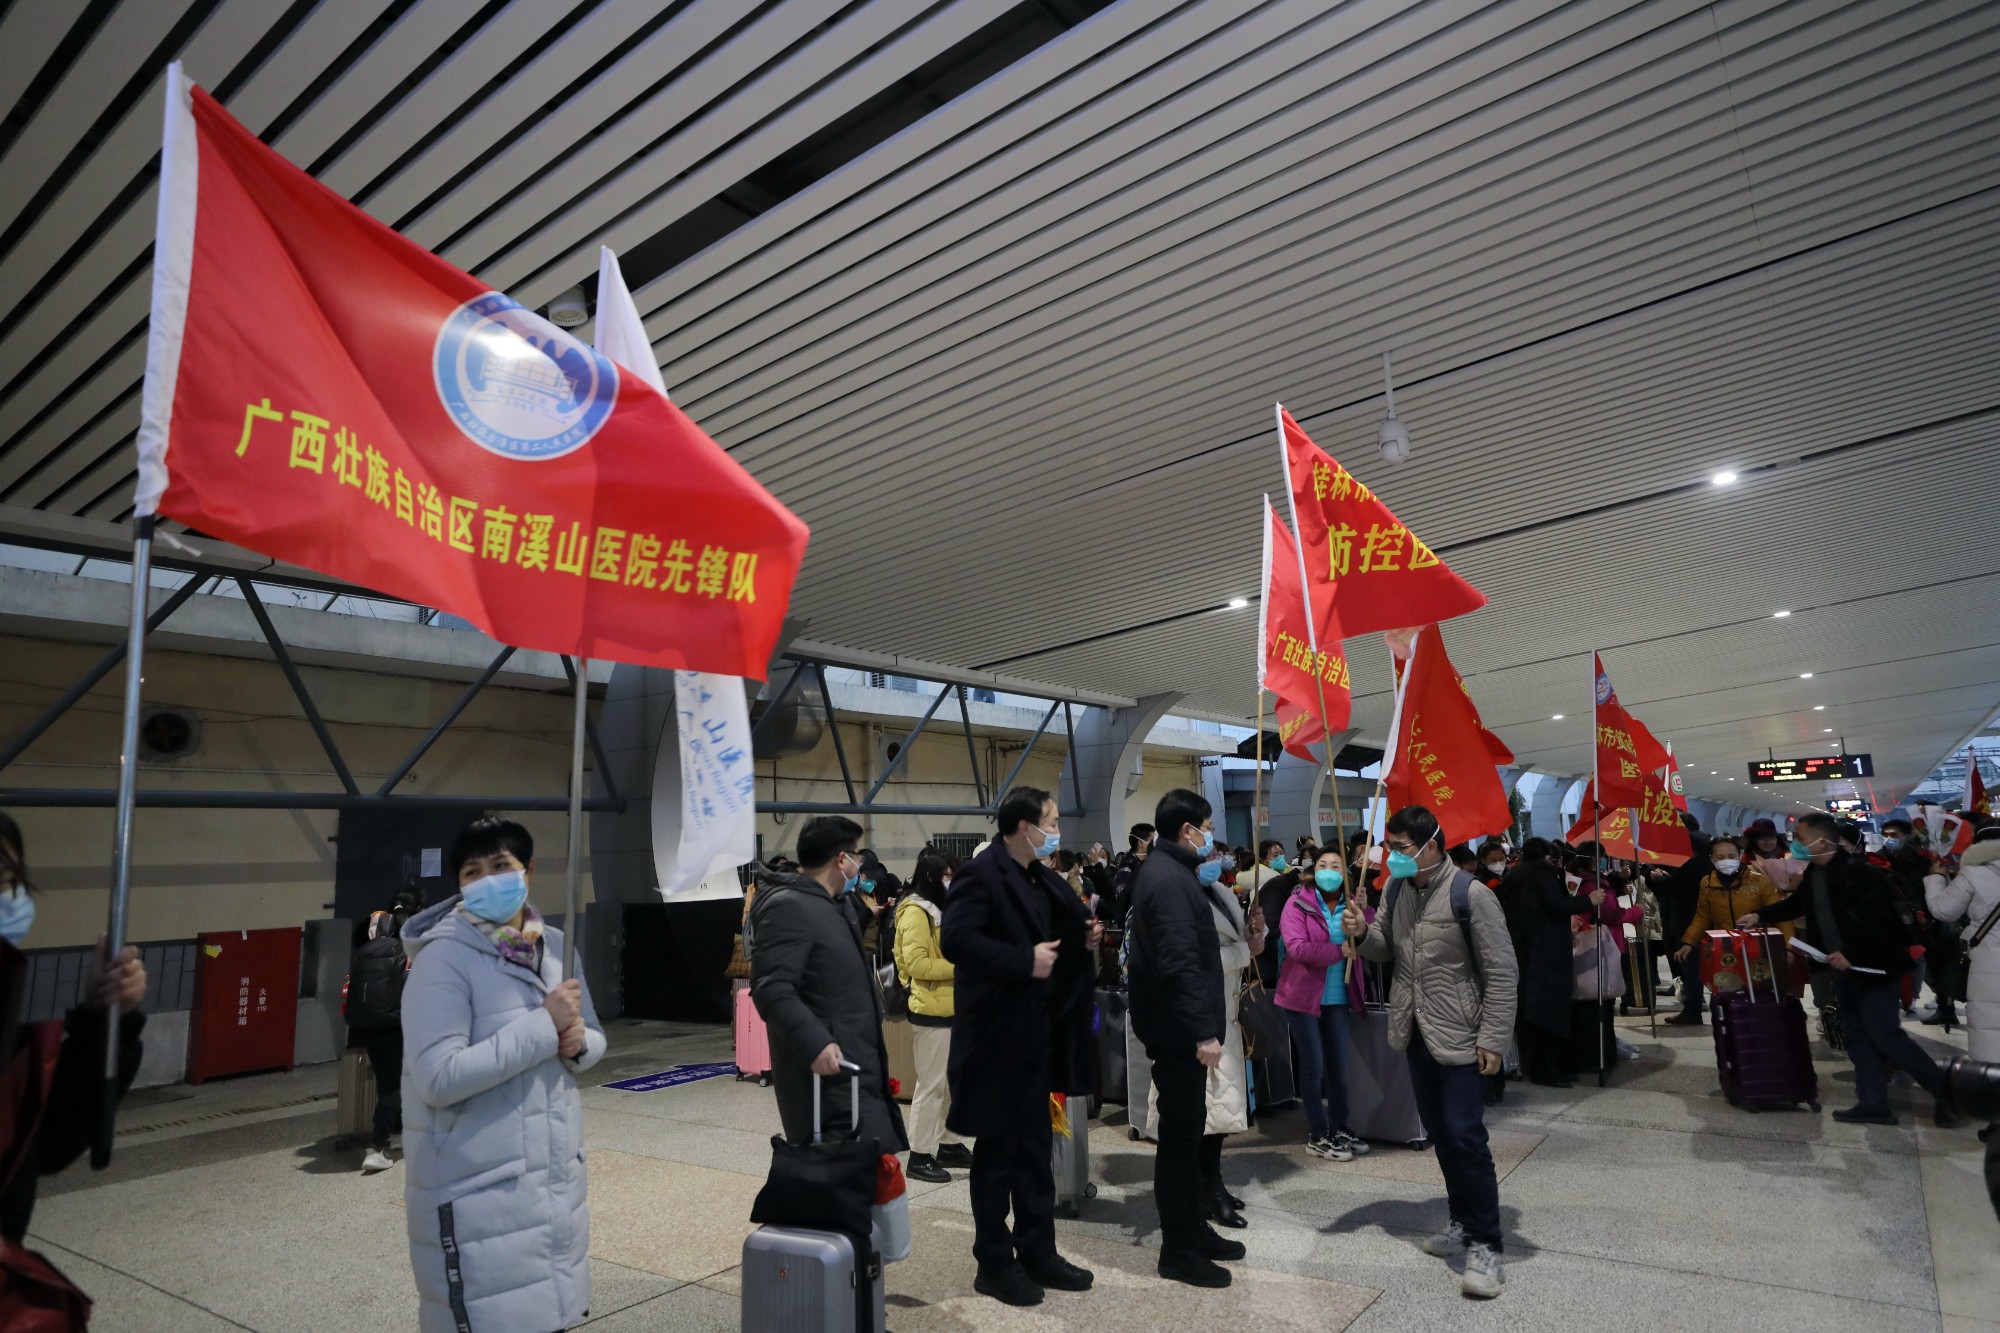 桂林市支援百色田東縣隔離區域防控醫療隊平安返回桂林